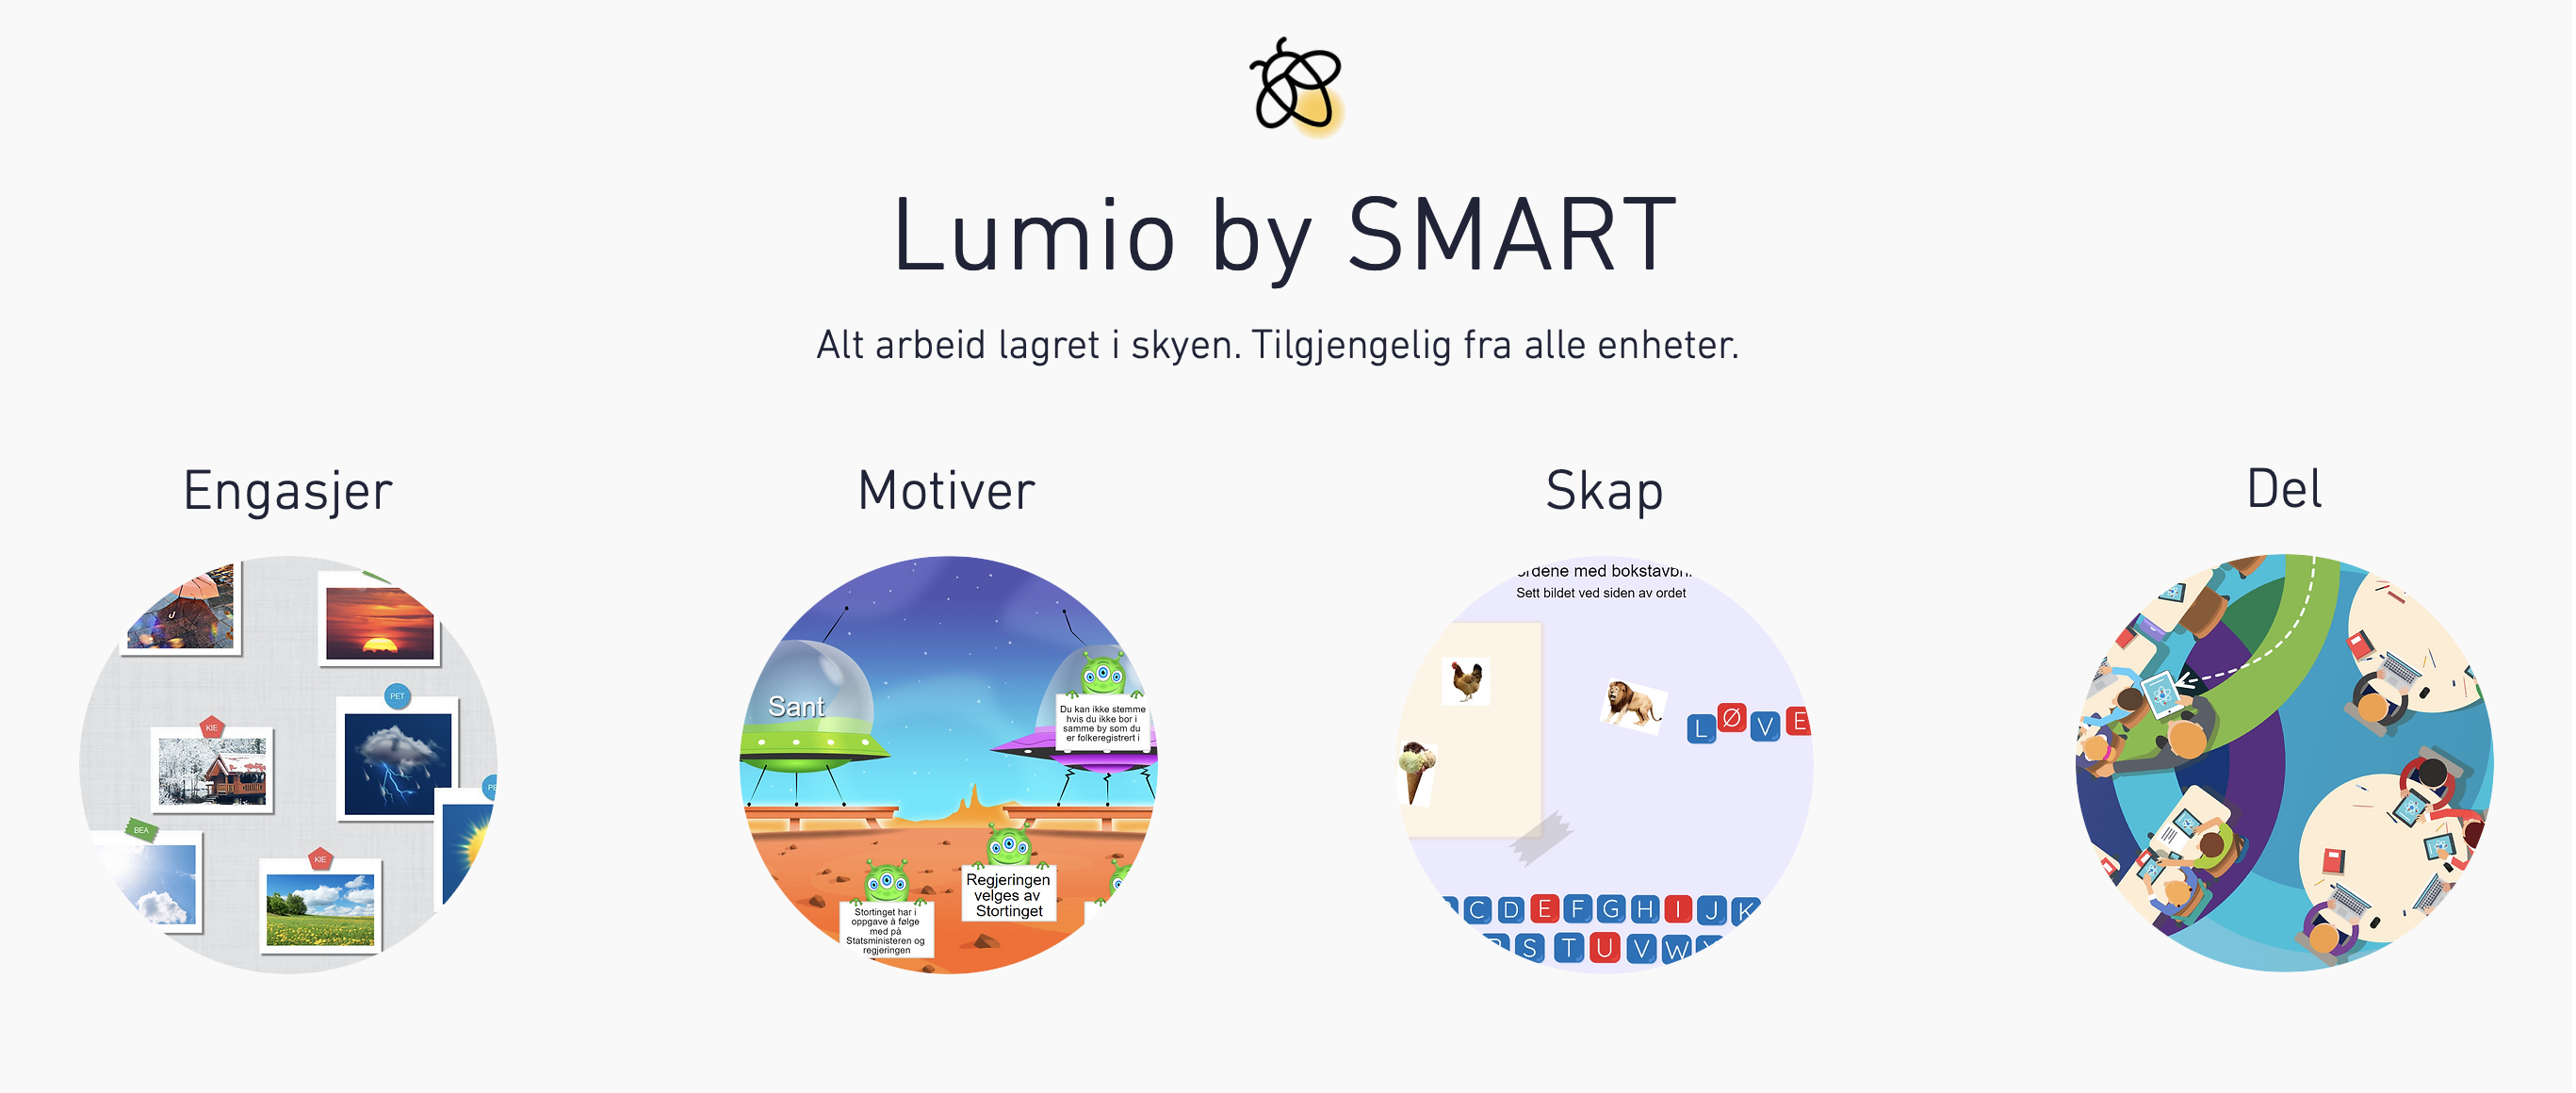 lumio.by.smart - engasjer, motiver,skap og del